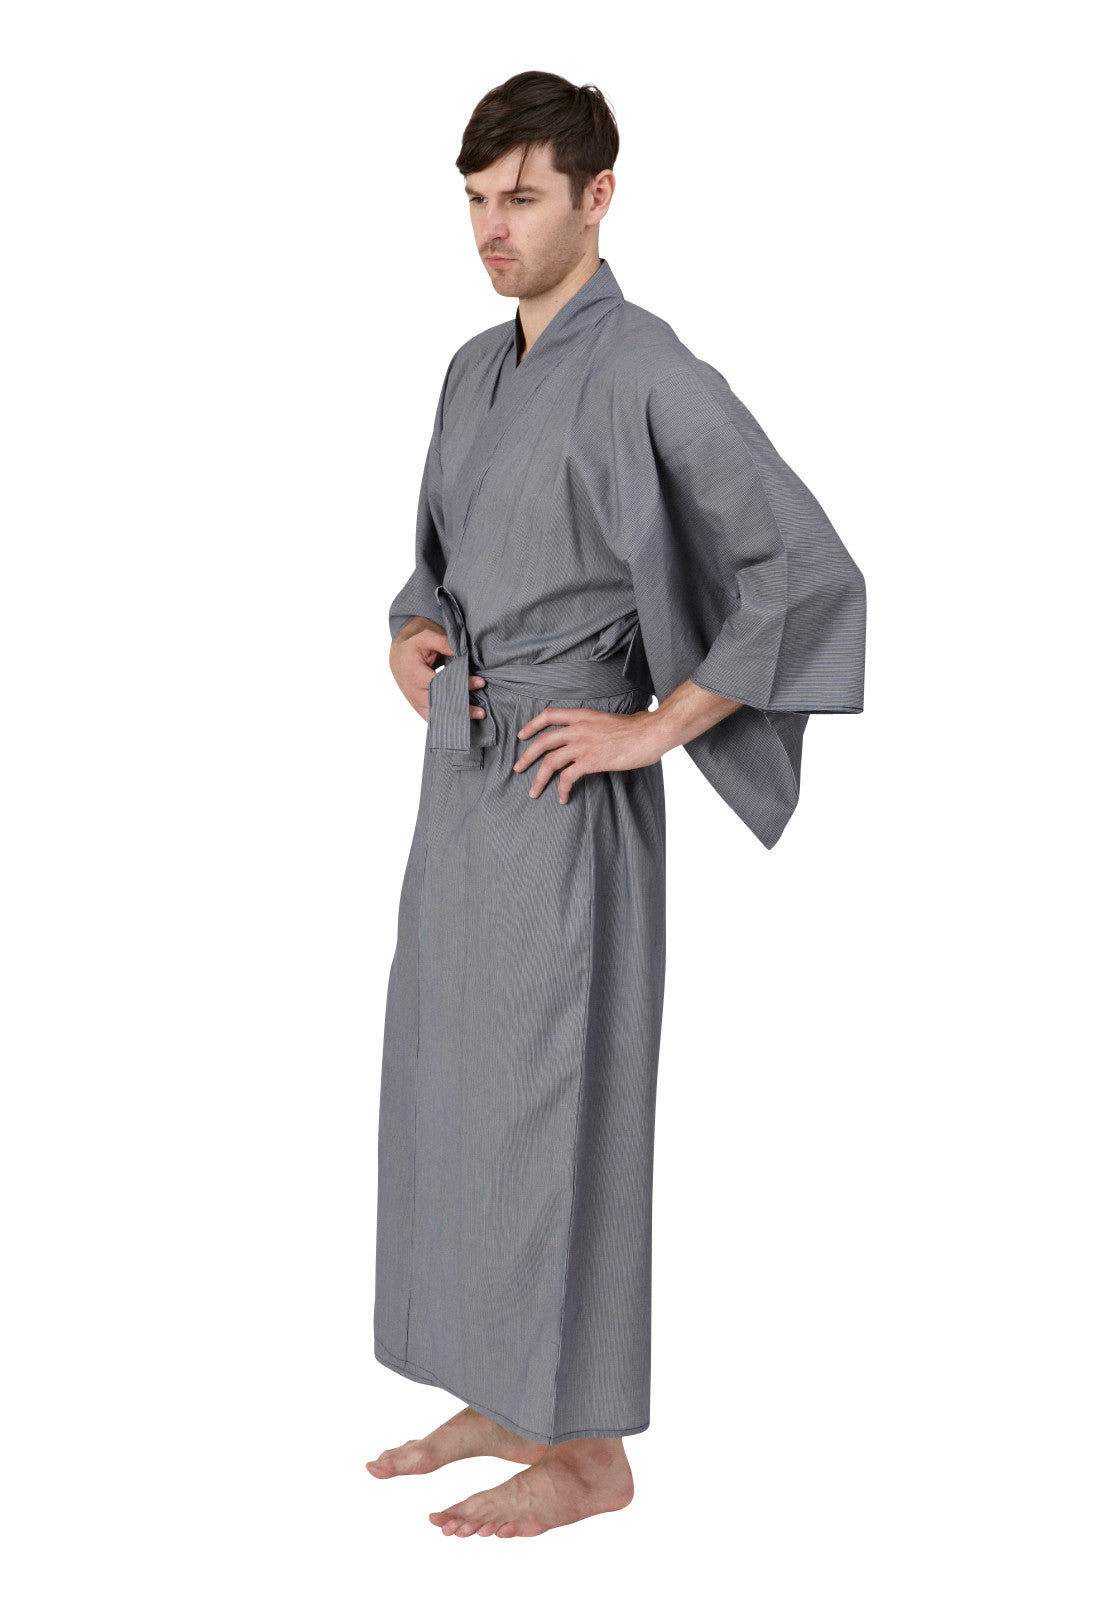 Kimono robe for men, japanese yukata for men – Beautiful Robes